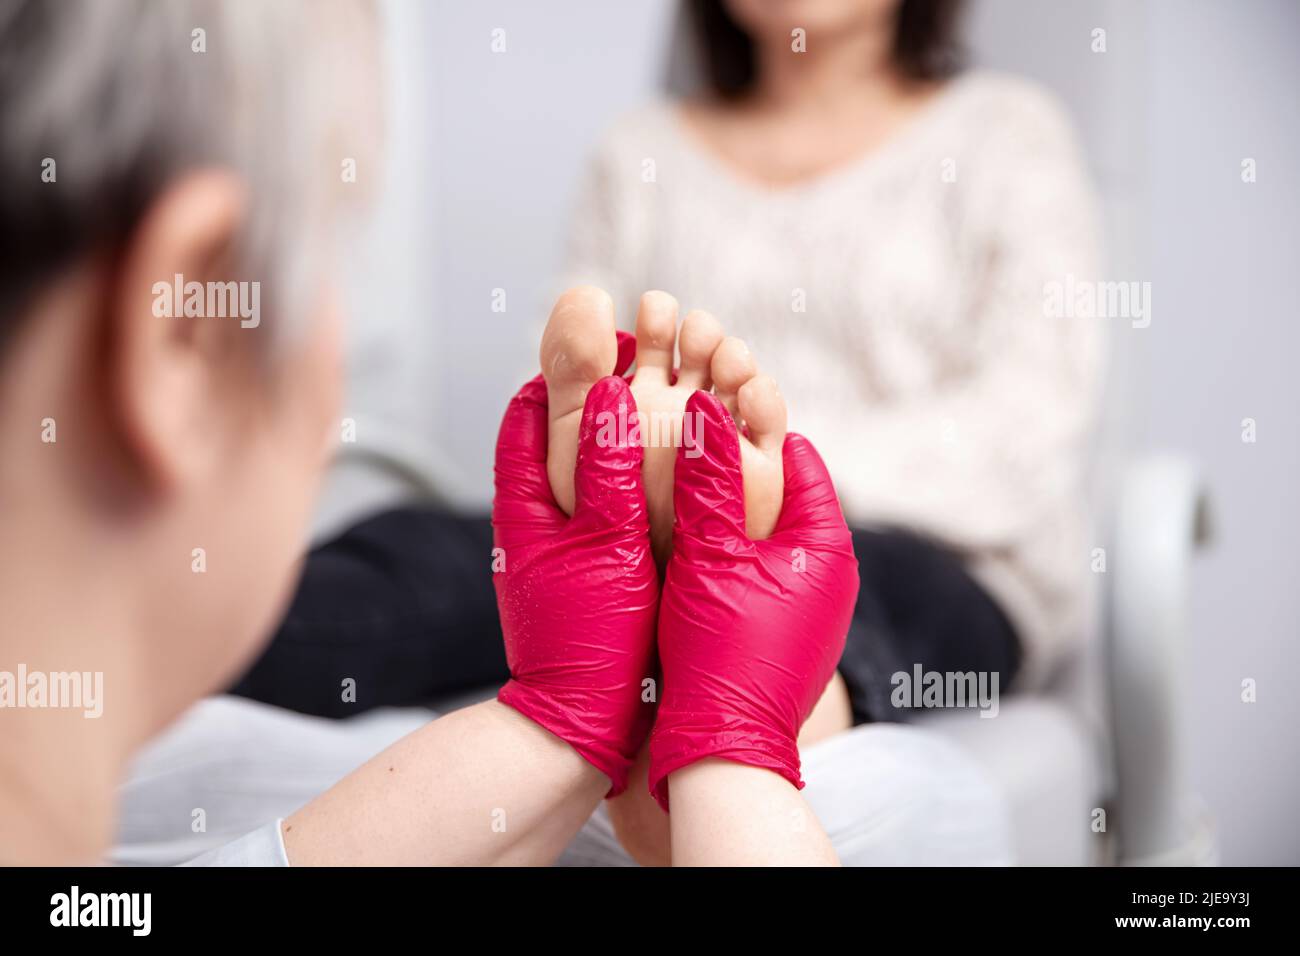 Fußbehandlung im SPA-Salon. Patient auf medizinische Pediküre Verfahren Stockfoto